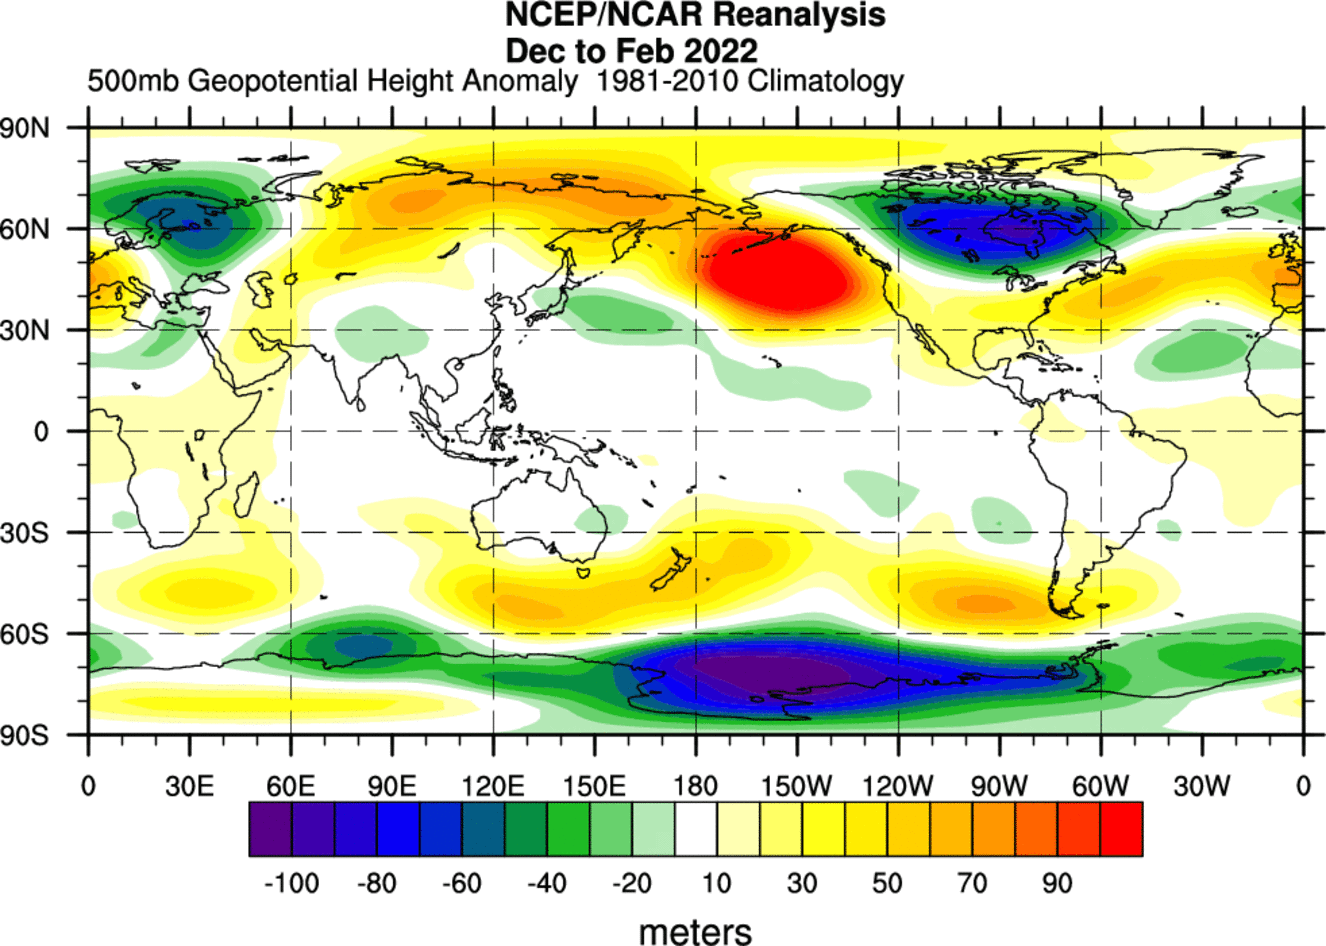 winter-season-2021-2022-weather-forecast-pressure-pattern-north-hemisphere-reanalysis-march-polar-vortex-split